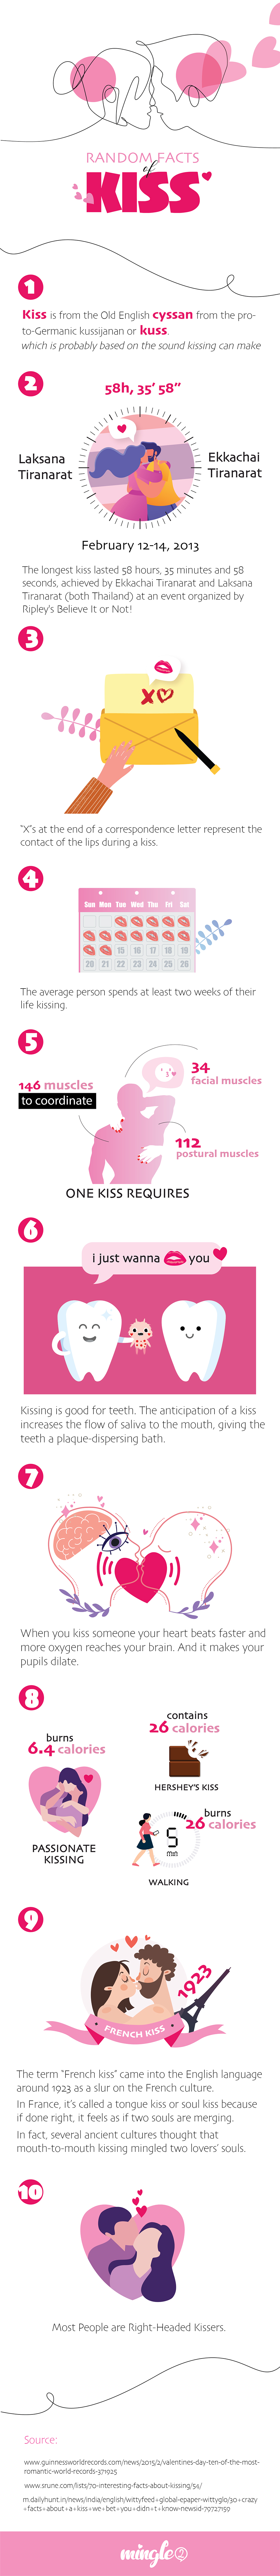 Random Facts of Kisses